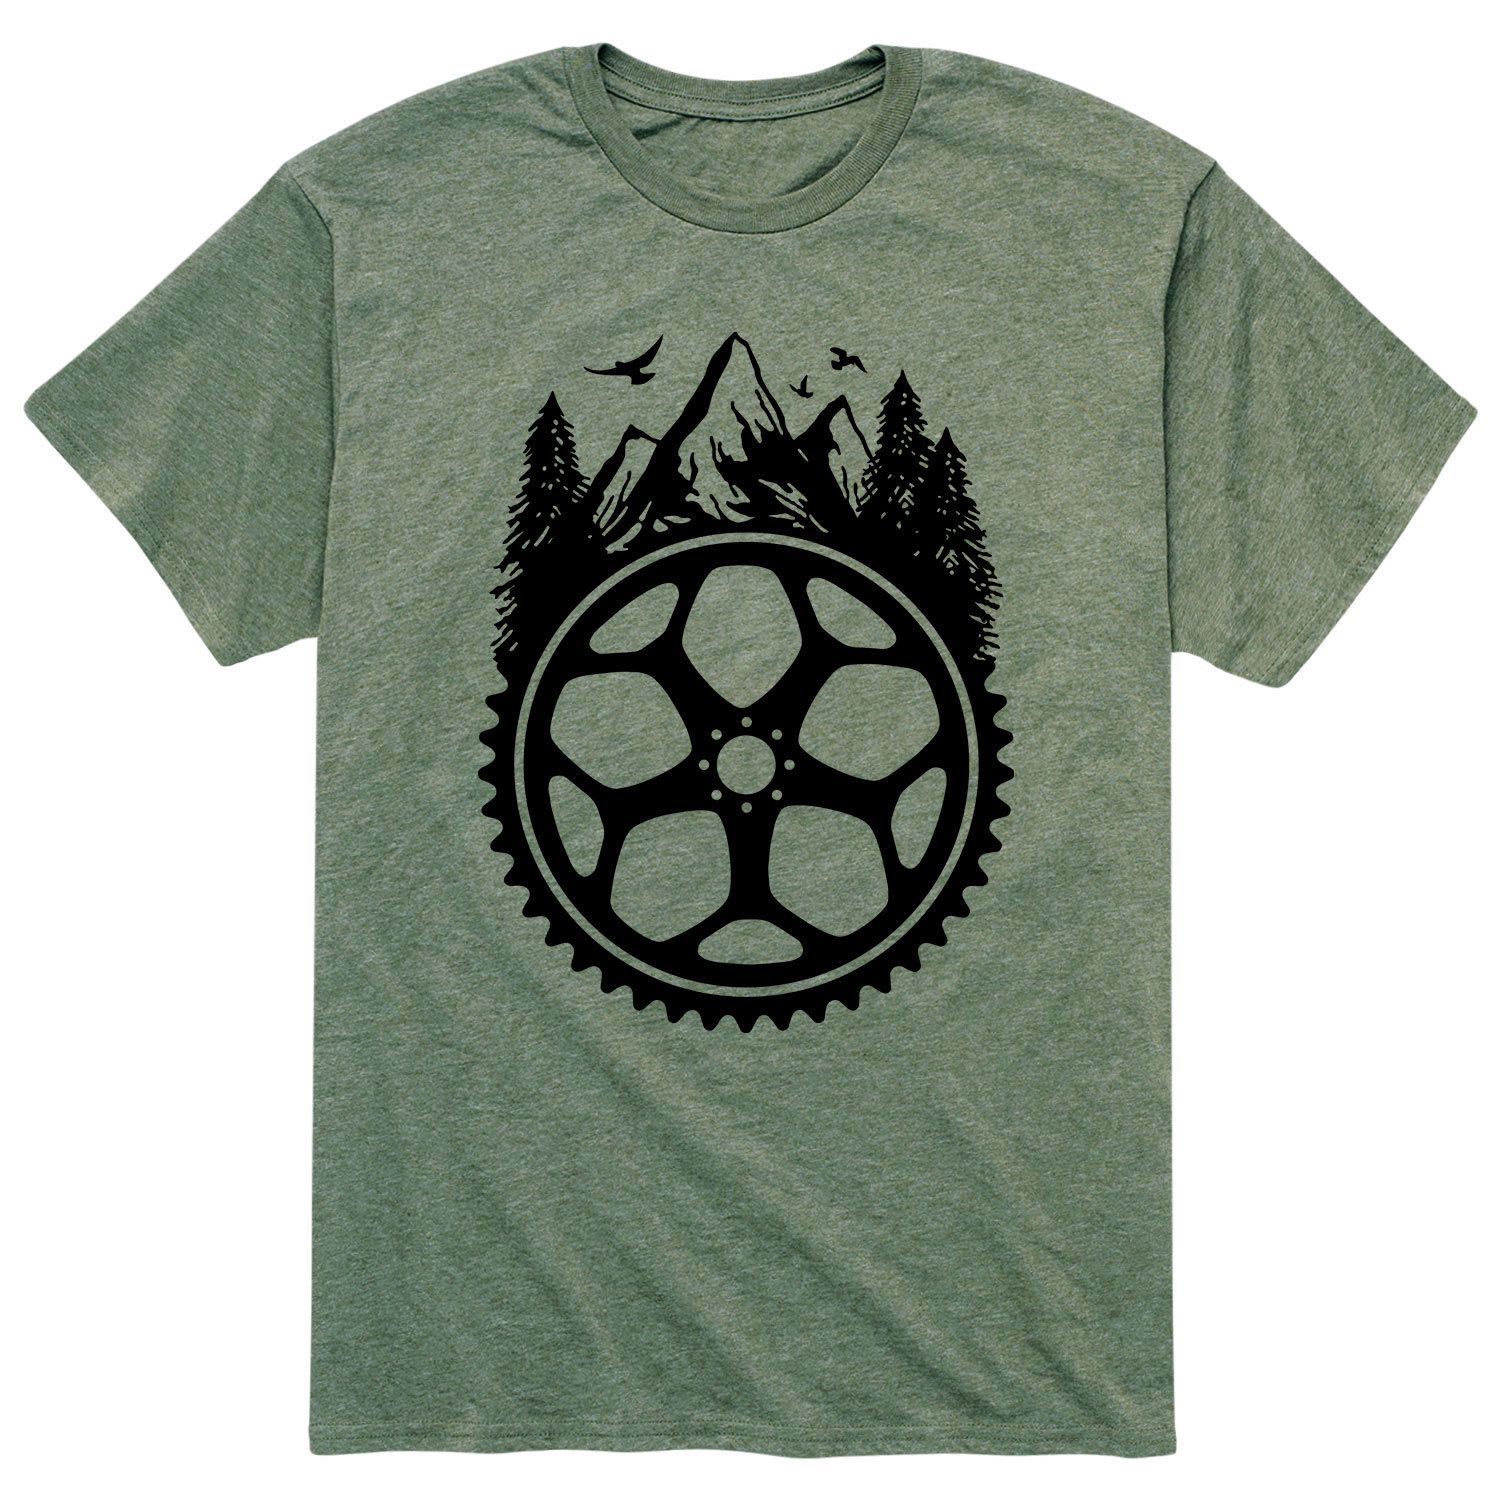 Мужская футболка для горного велосипеда Licensed Character джерси для мотокросса mtb moto gp одежда для велоспорта одежда для горного велосипеда мужская одежда для горного велосипеда мужская одежда дл